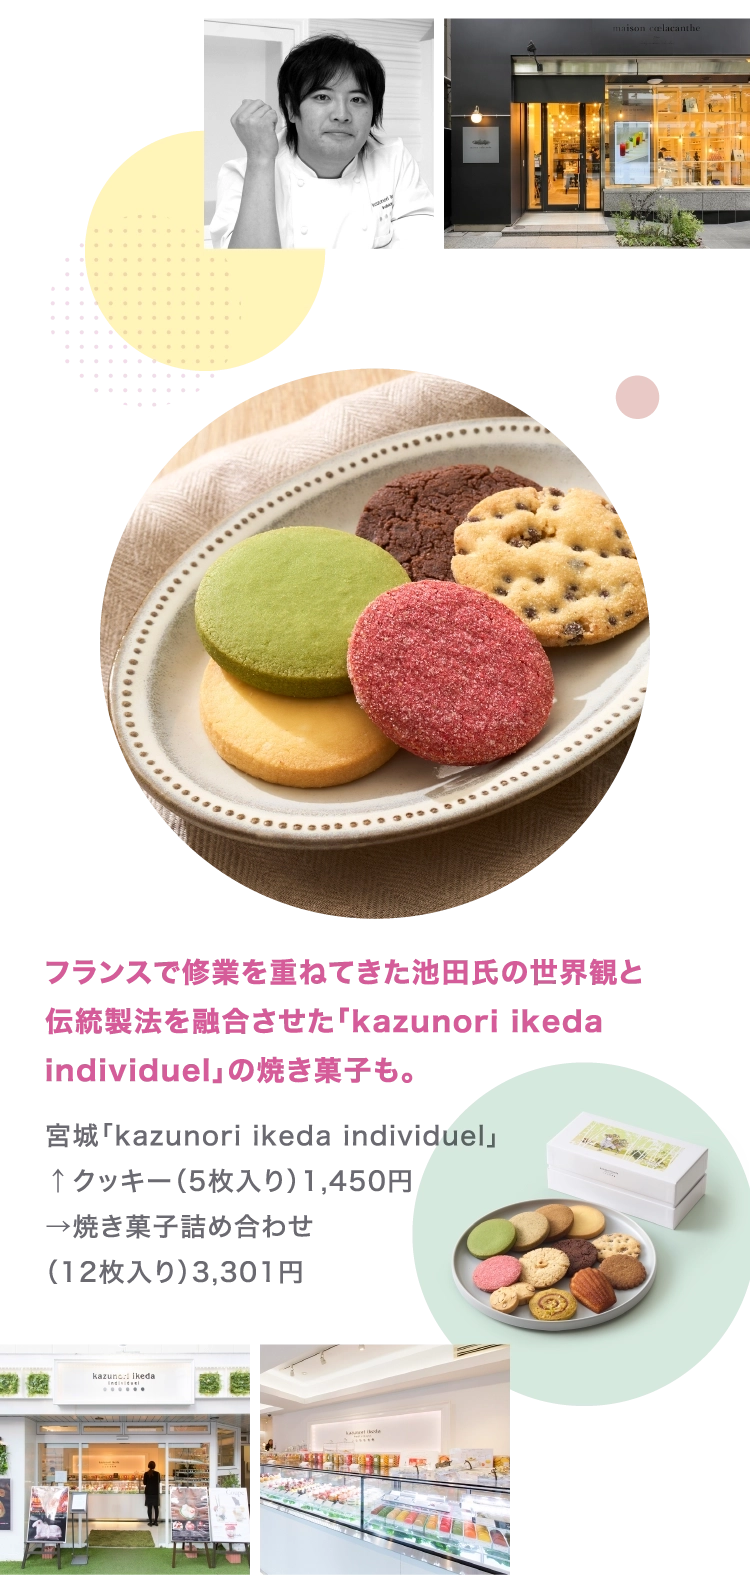 宮城「kazunori ikeda individuel」
        ↑クッキー（5枚入り）1,450円
        →焼き菓子詰め合わせ
        （12枚入り）3,301円